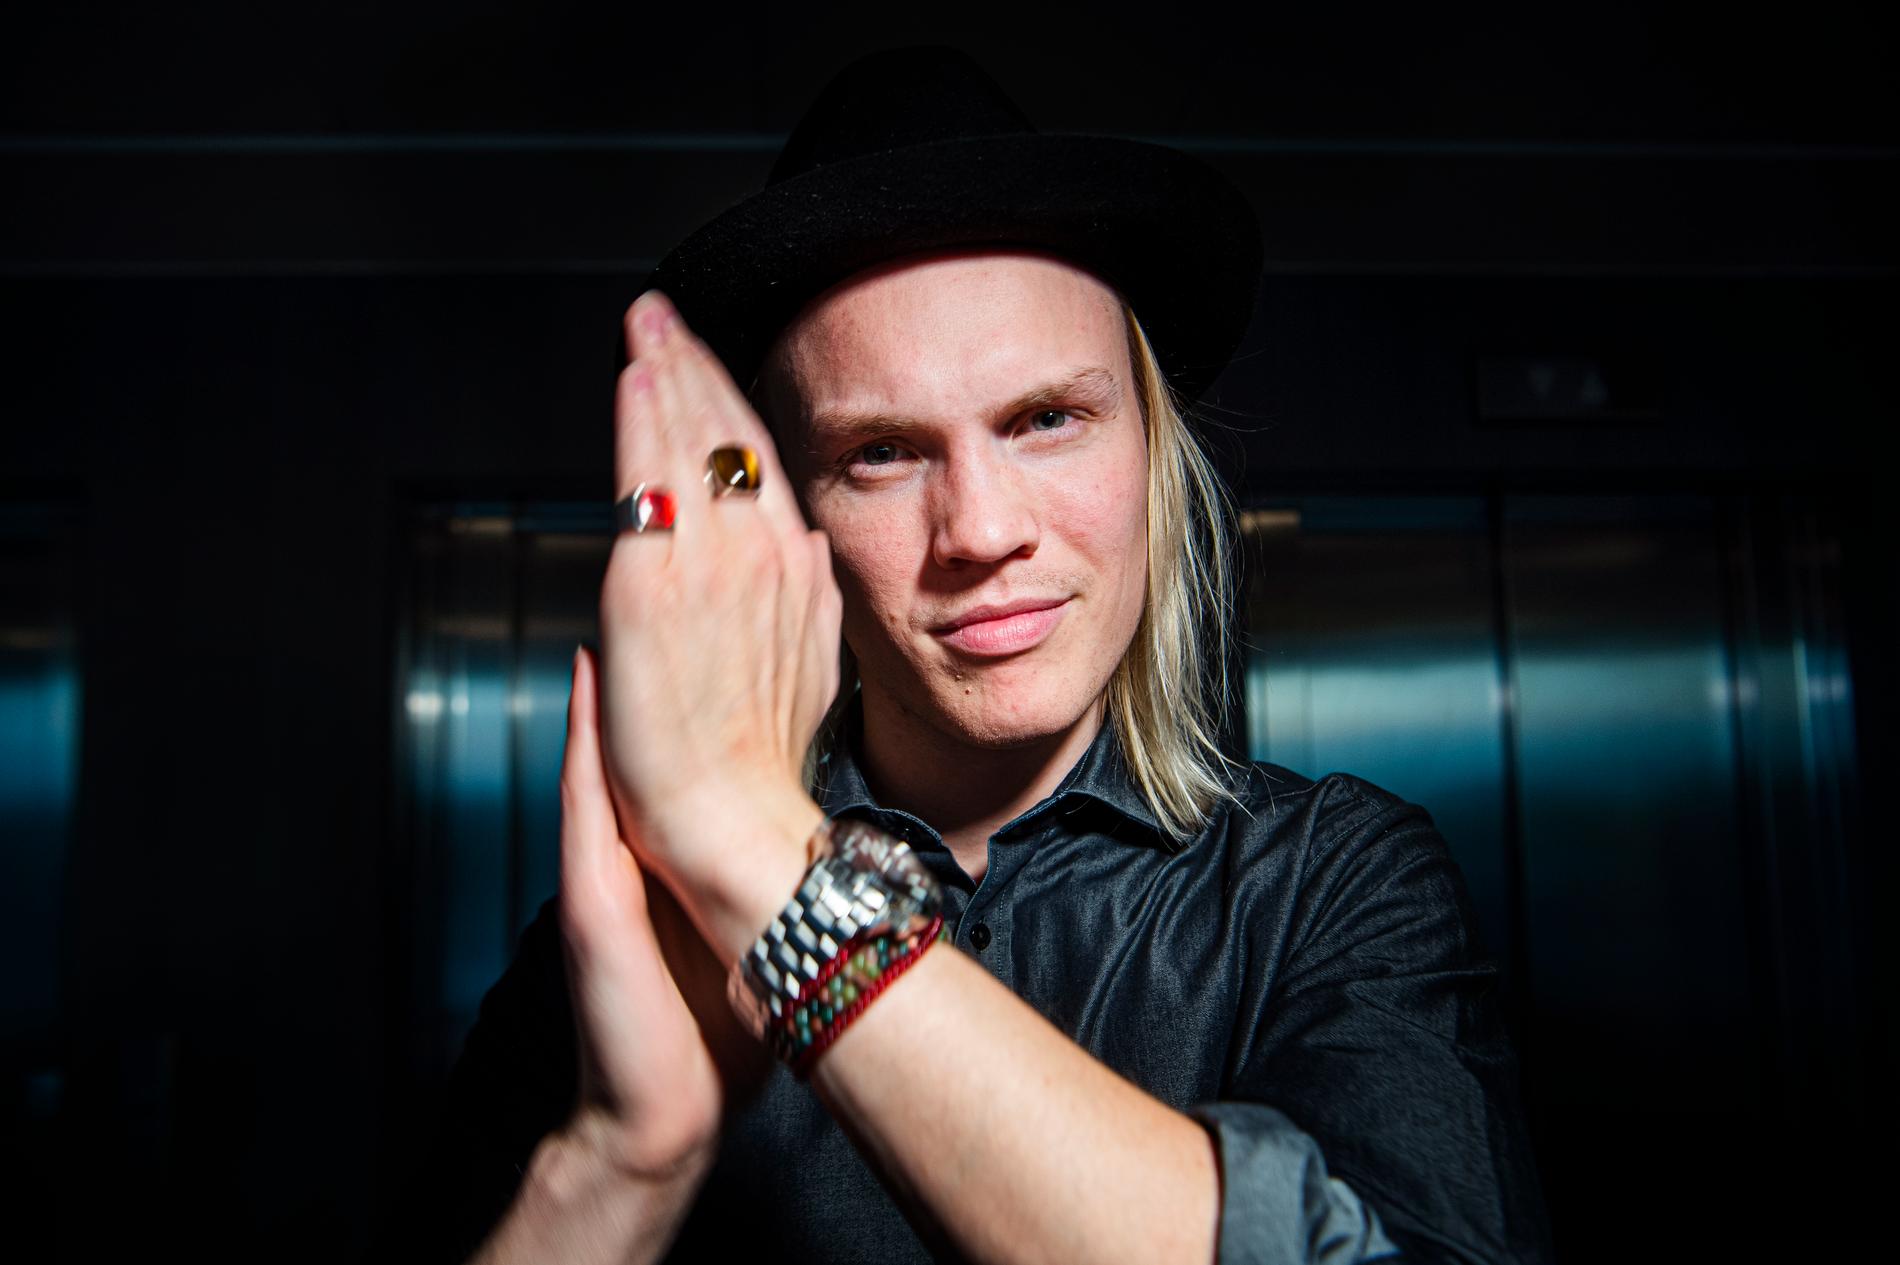 Jakob Karlberg vill slå rekord i att klappa i händerna – med sin egen låt i Melodifestivalen